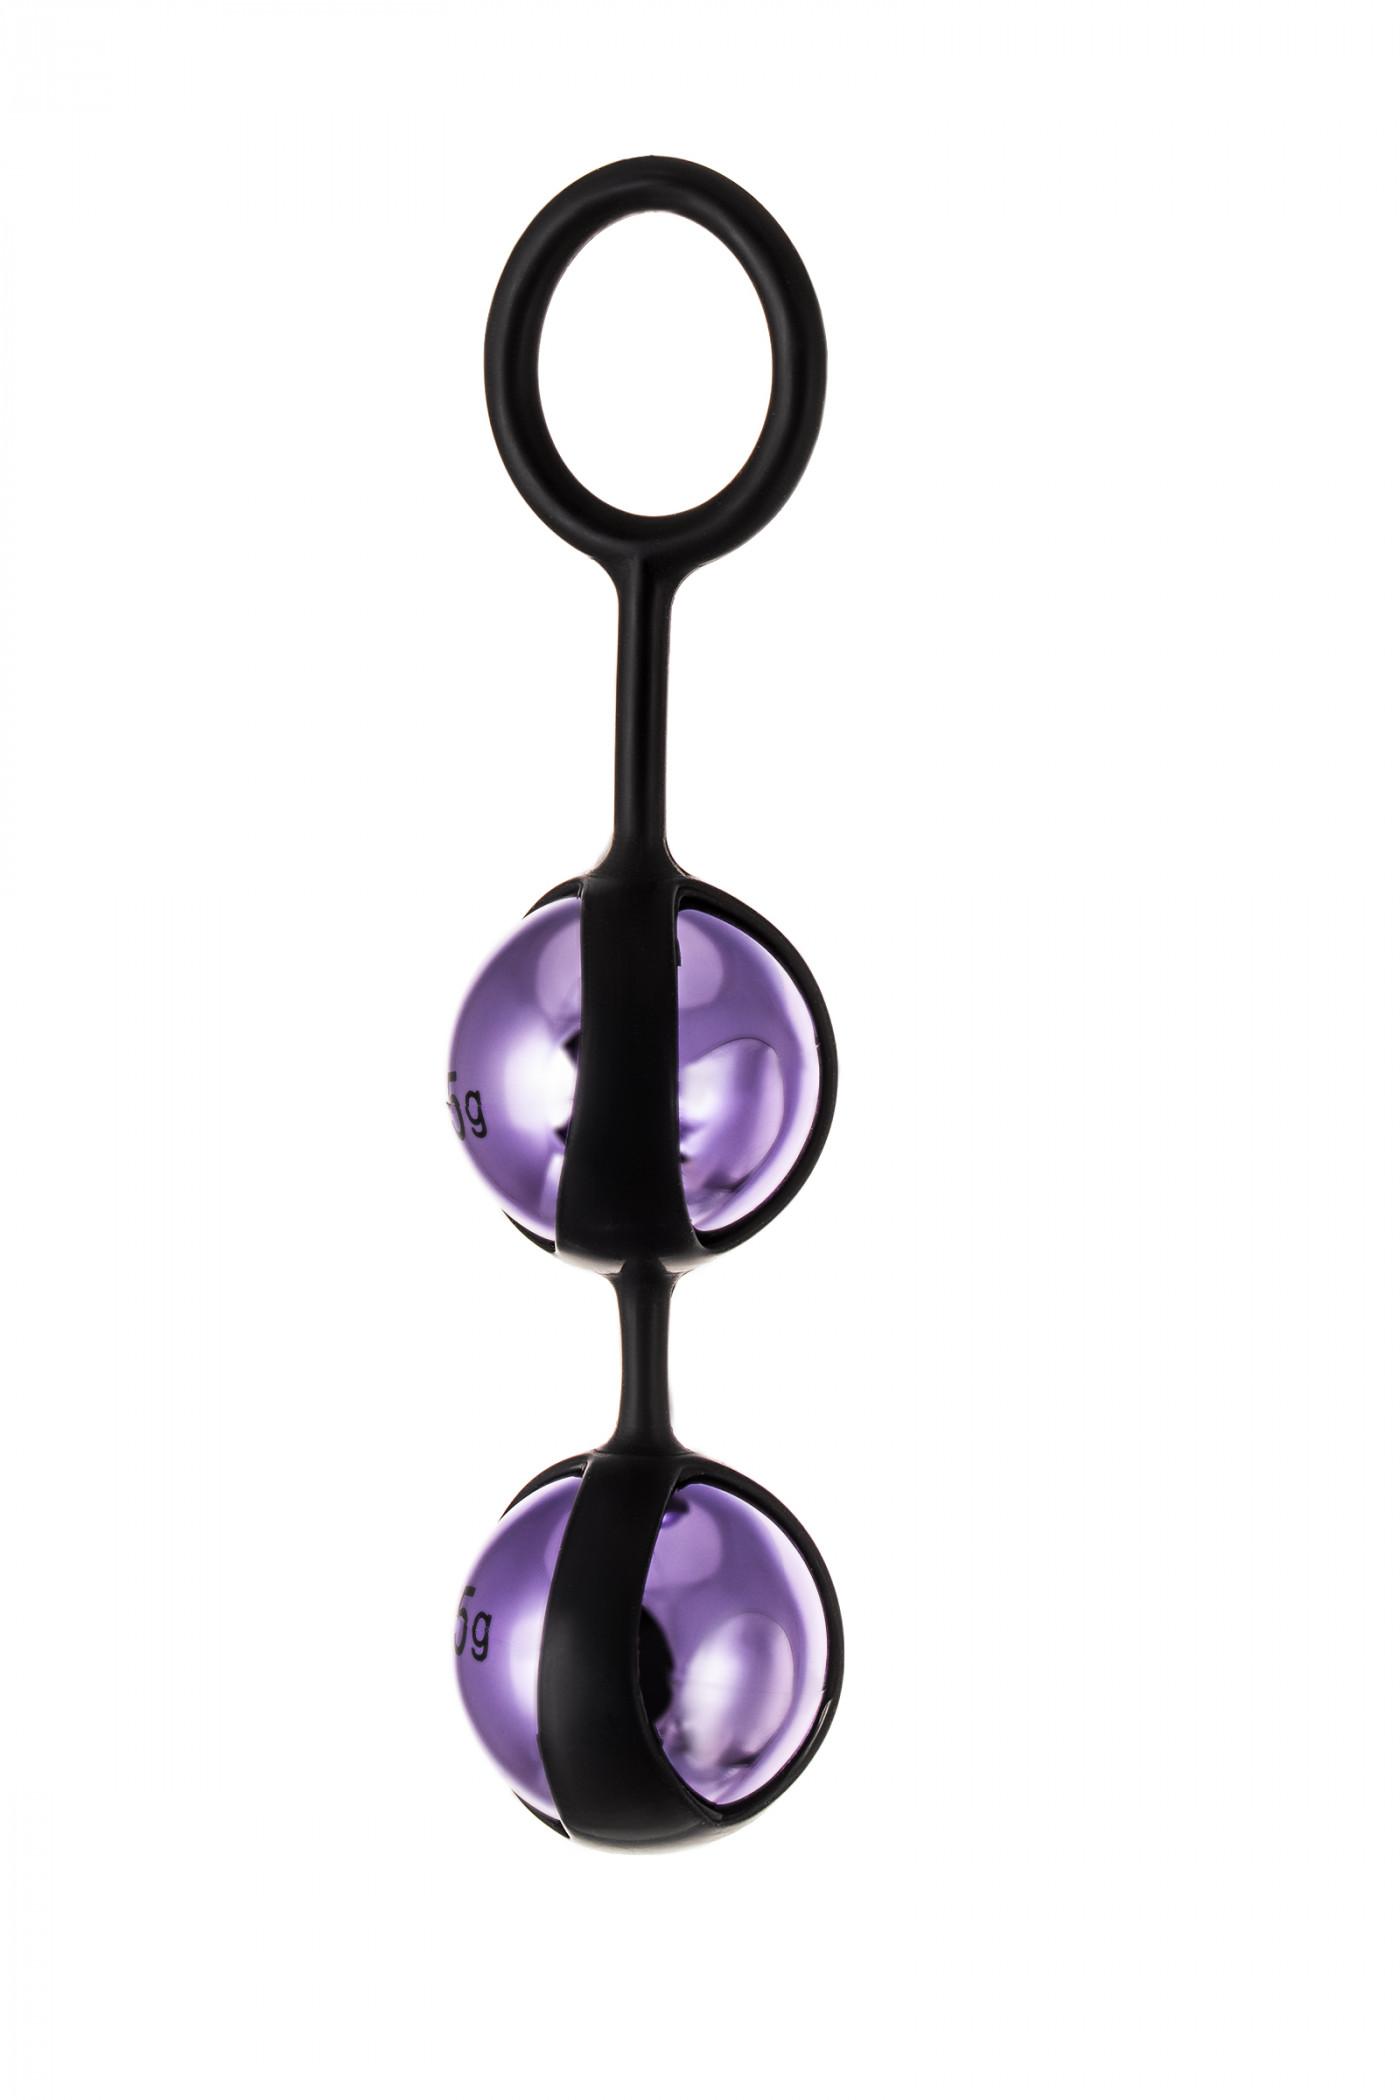 Вагинальные шарики TOYFA A-Toys  , ABS пластик, Фиолетовый, 14,6 см Vestalshop.ru - Изображение 1